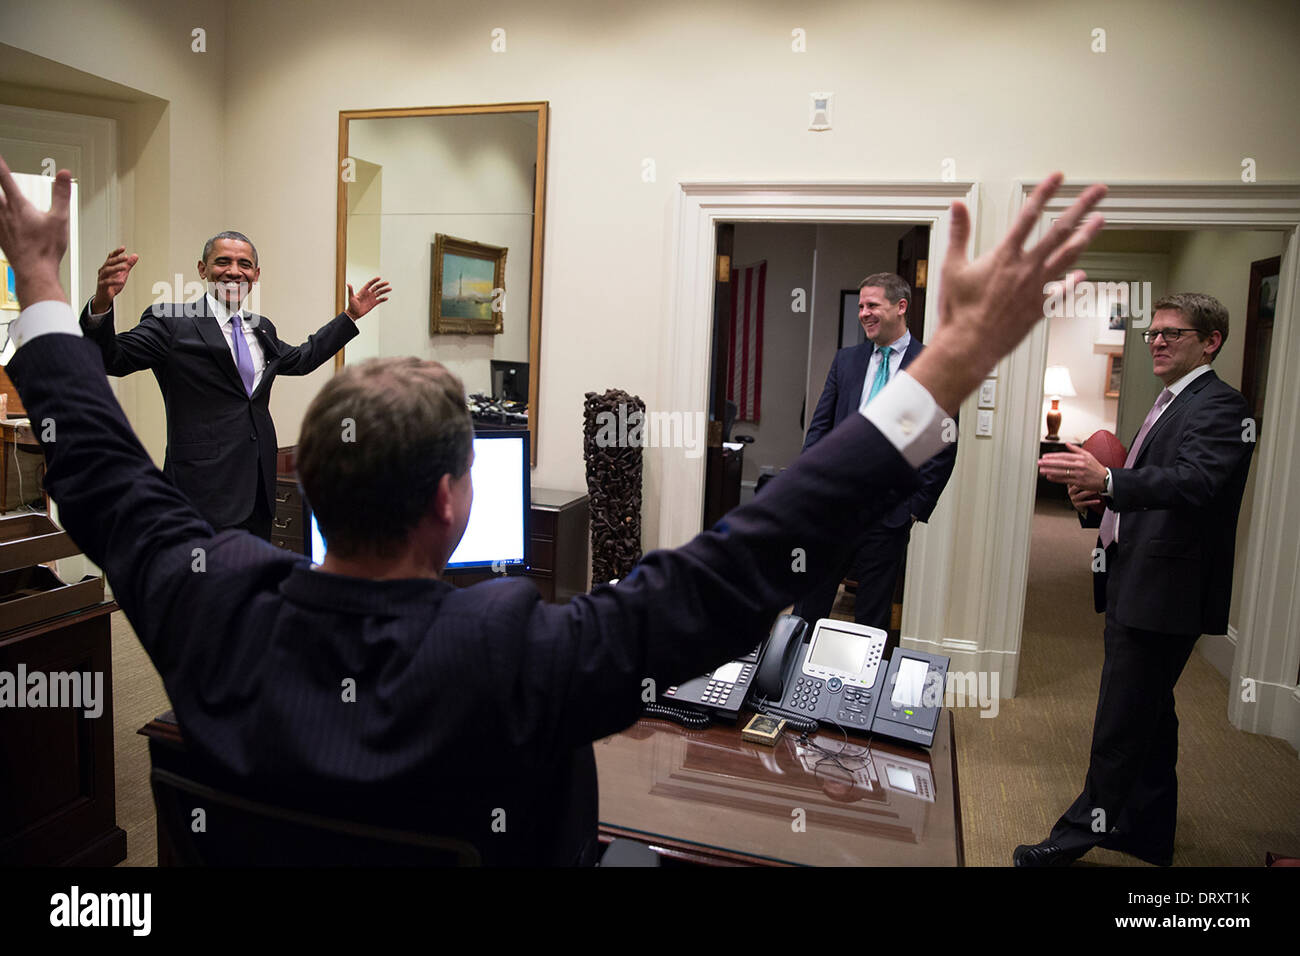 US-Präsident Barack Obama feiert mit Pressesprecher Jay Carney in äußeren Oval Office nach der Senat-Abstimmung über die Bundesregierung Herunterfahren und Schulden Decke 16. Oktober 2013 in Washington, DC. Reise-Regisseur Marvin Nicholson und Senior Advisor Dan Pfeiffer zu sehen. Stockfoto